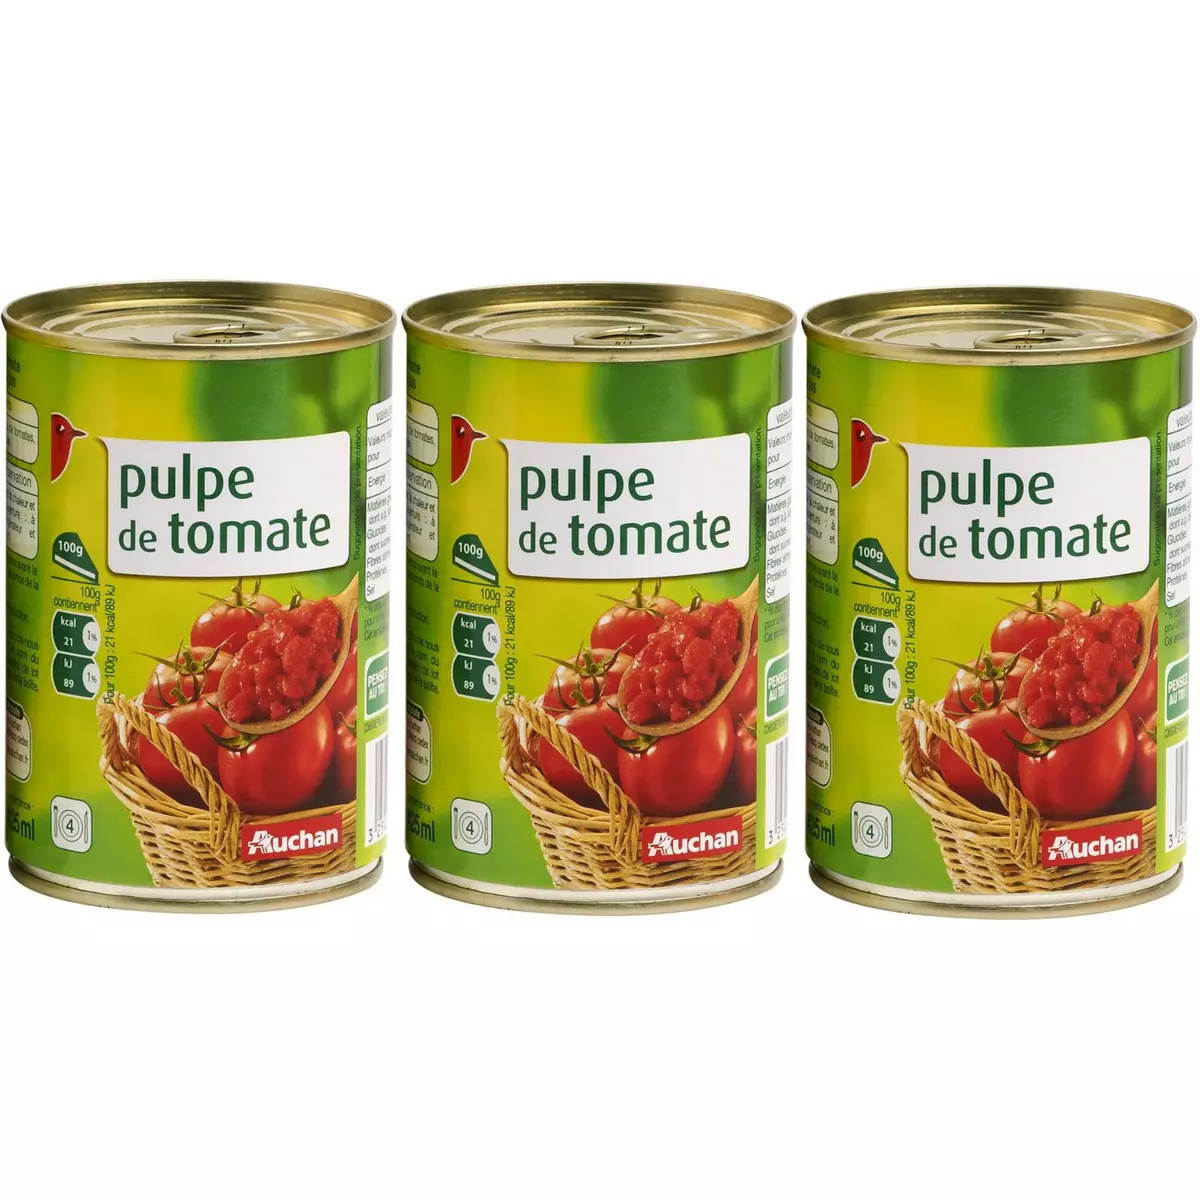 AUCHAN Pulpe de tomate en boîte 3x400g